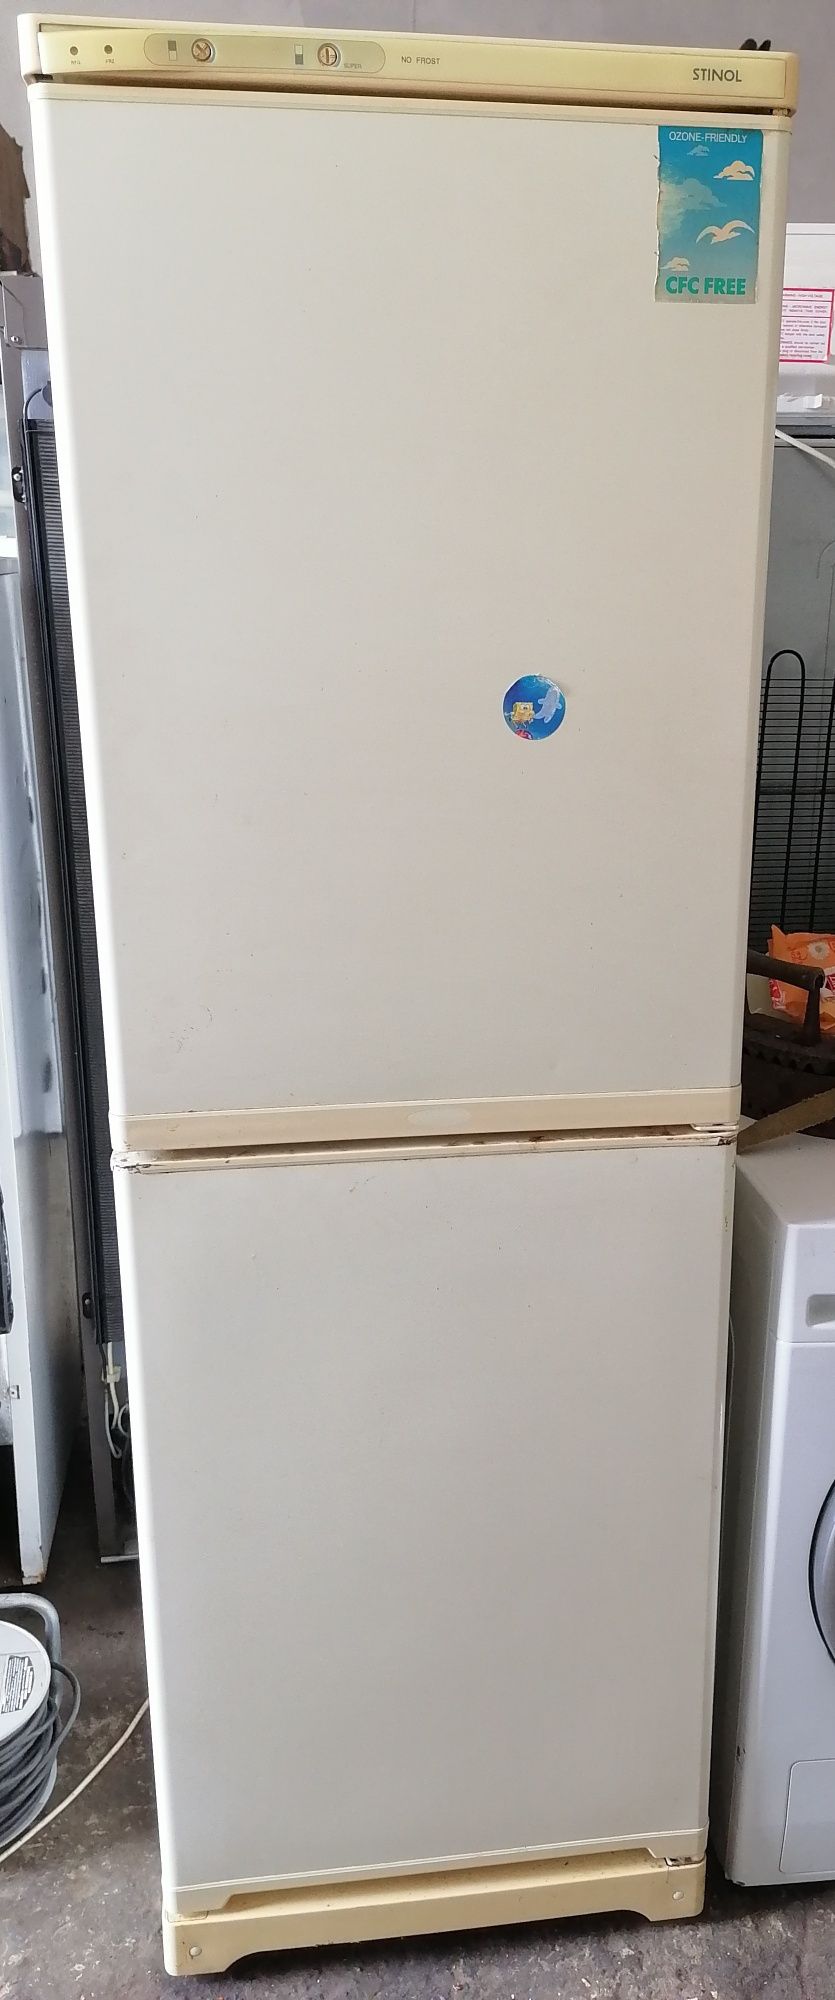 Продам холодильник Stinol no frost